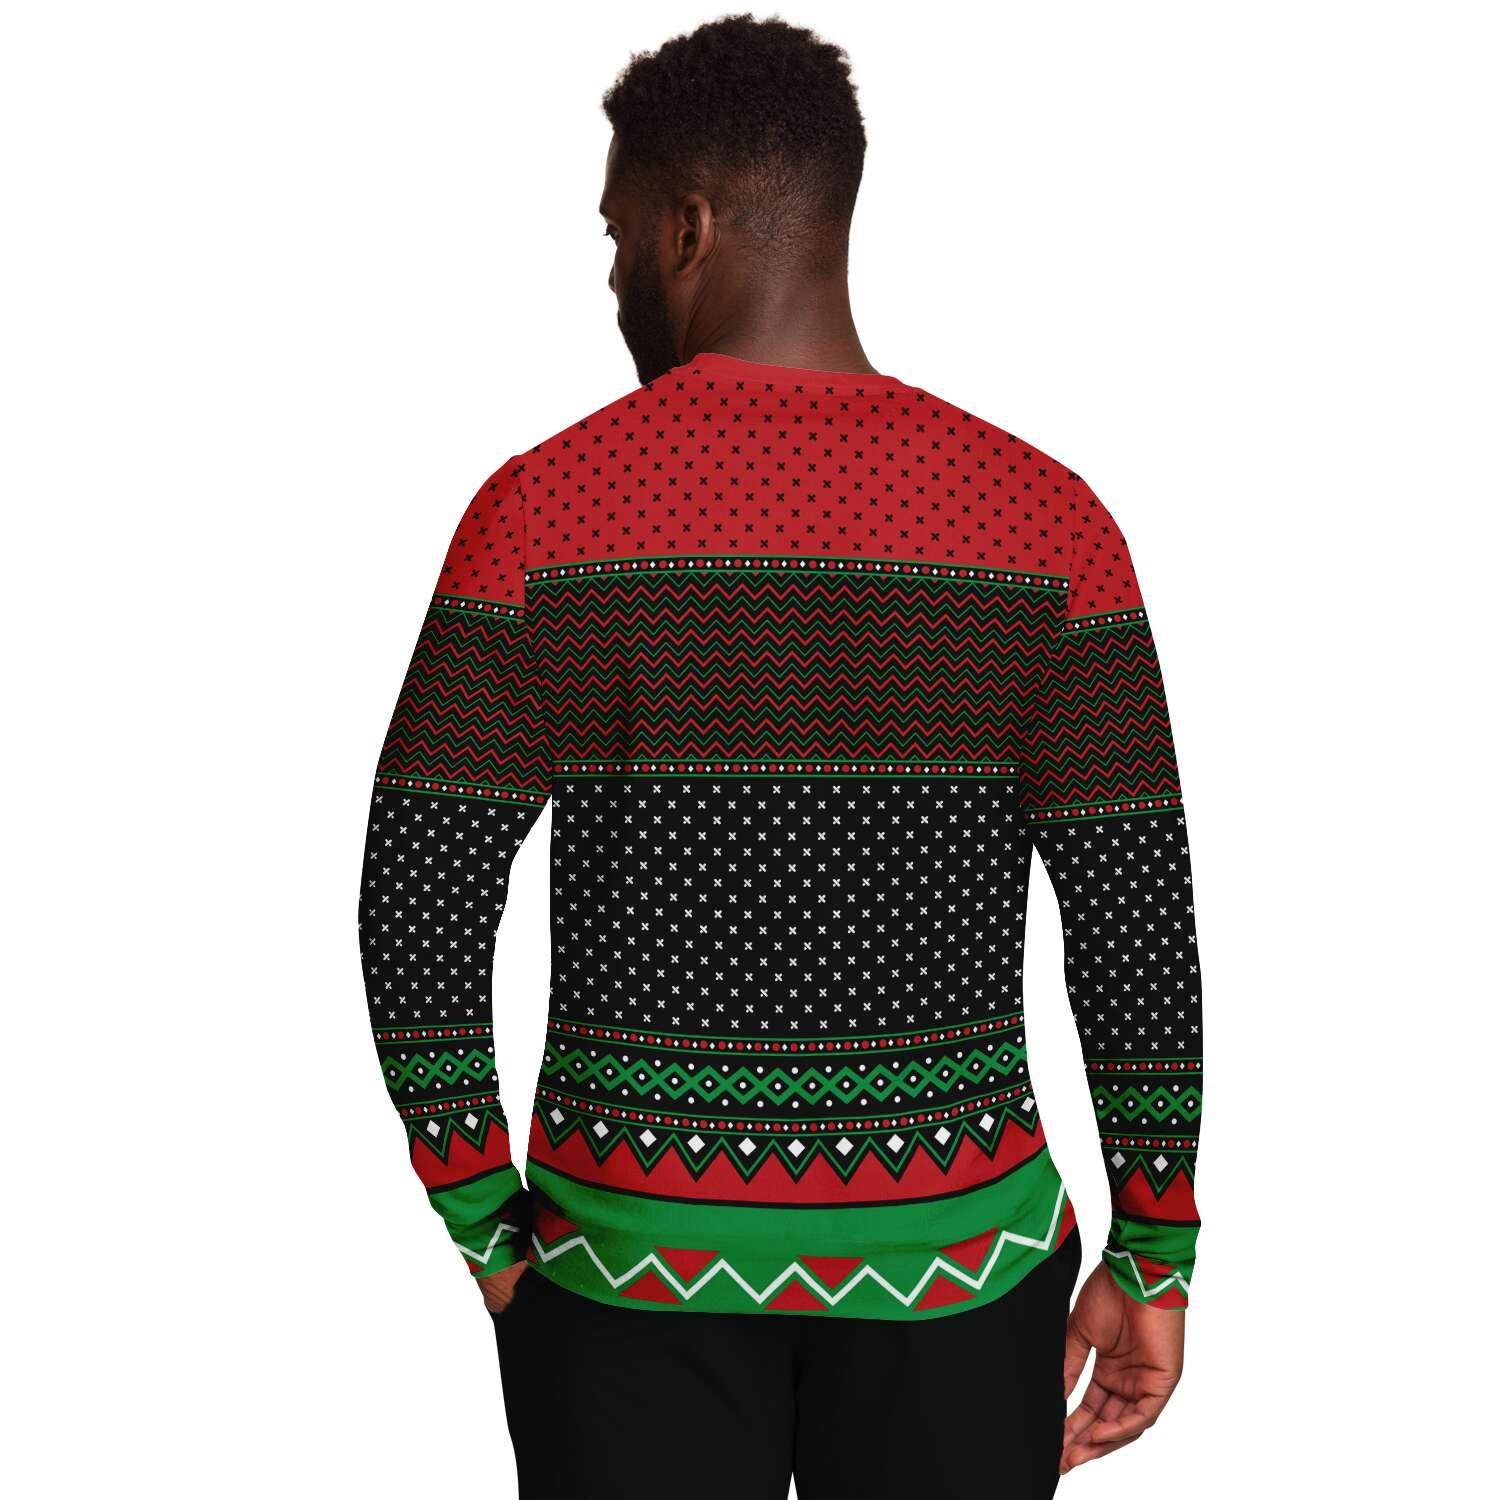 Ask Your Mom if I am real Unisex Ugly Christmas Sweatshirt - TopKoalaTee